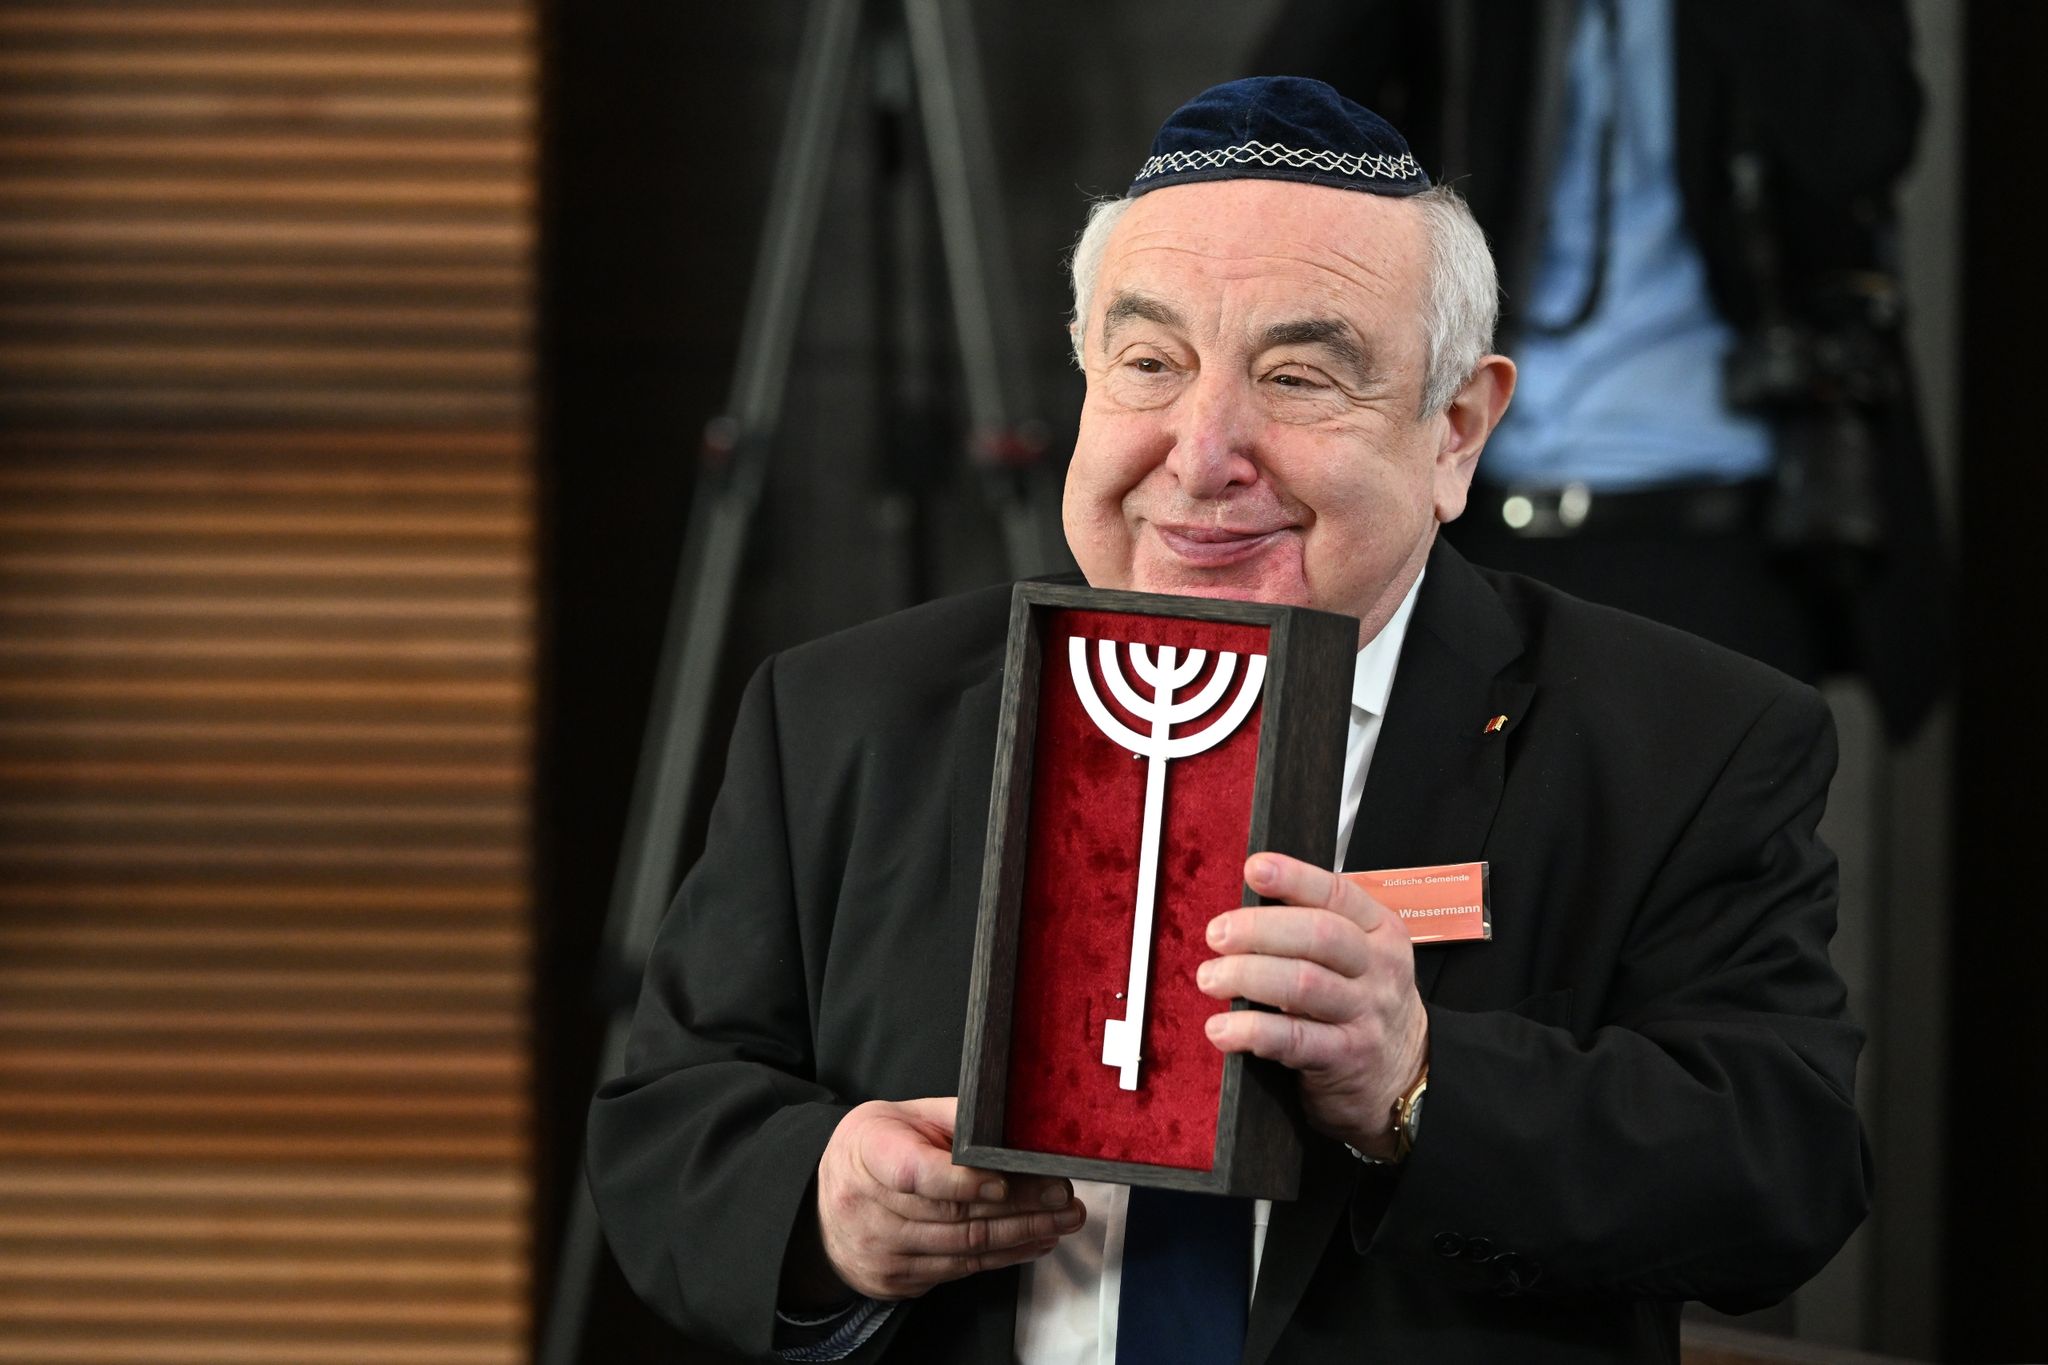 Einweihung der neu erbauten Synagoge in Dessau-Roßlau. Alexander Wassermann, Vorsitzender der jüdischen Gemeinde Dessau, hält einen symbolischen Schlüssel zur Synagoge, in der Form einer Menora, in den Händen.